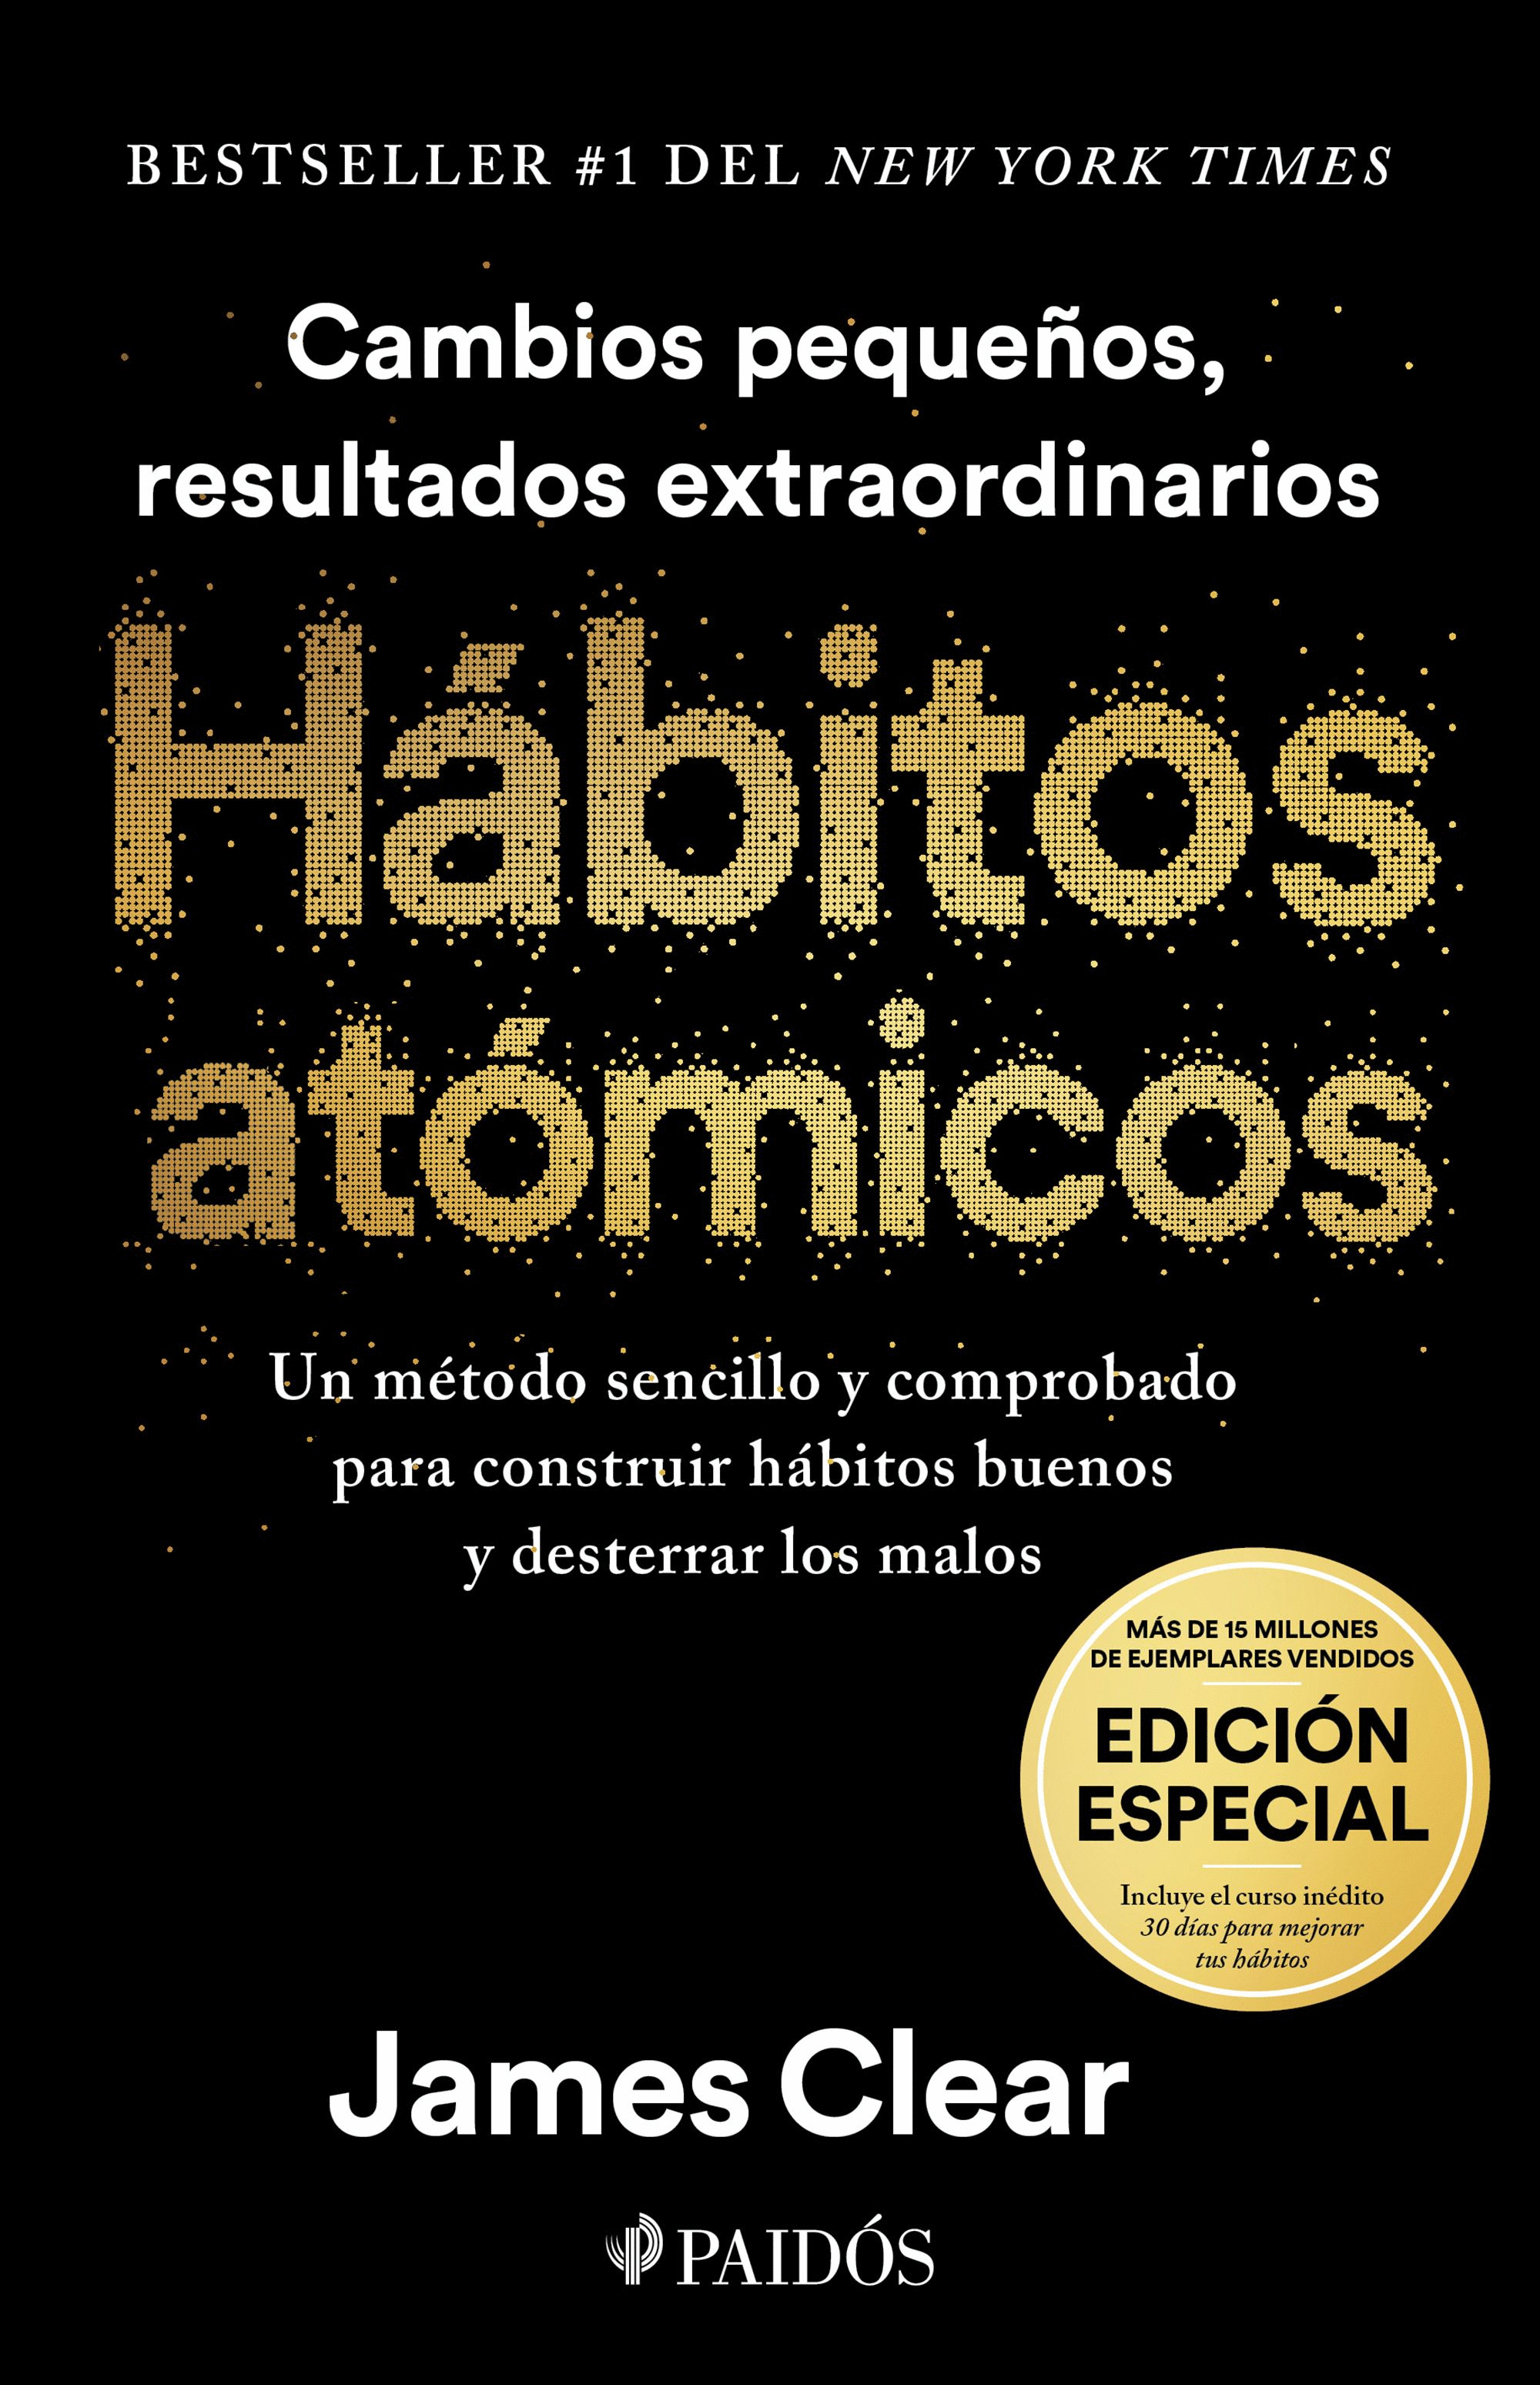 Libro Habitos Atomicos - James Clear